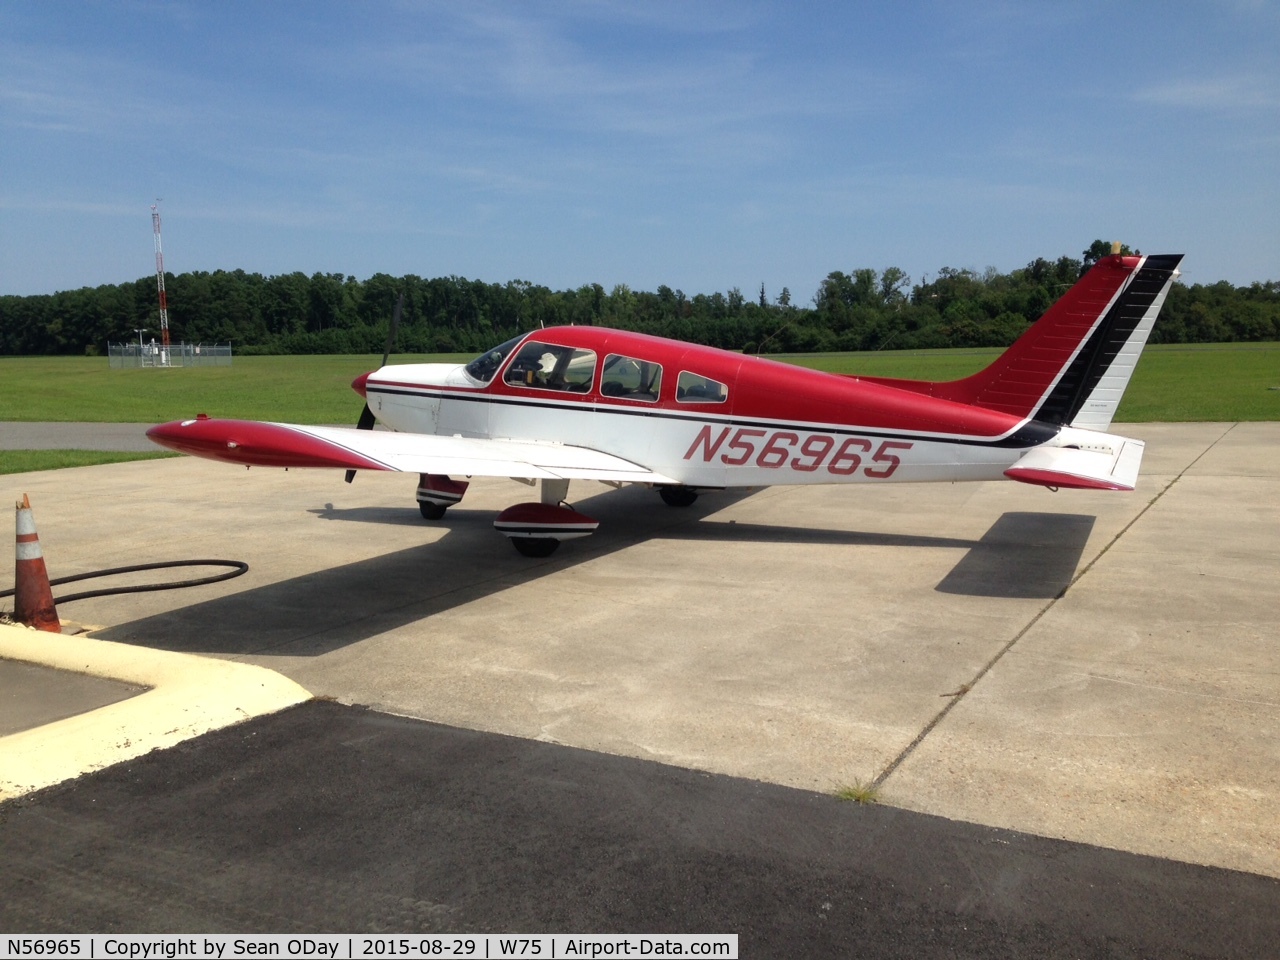 N56965, 1973 Piper PA-28-235 Cherokee C/N 28-7410036, Taken at Hummel Field in August, 2016.